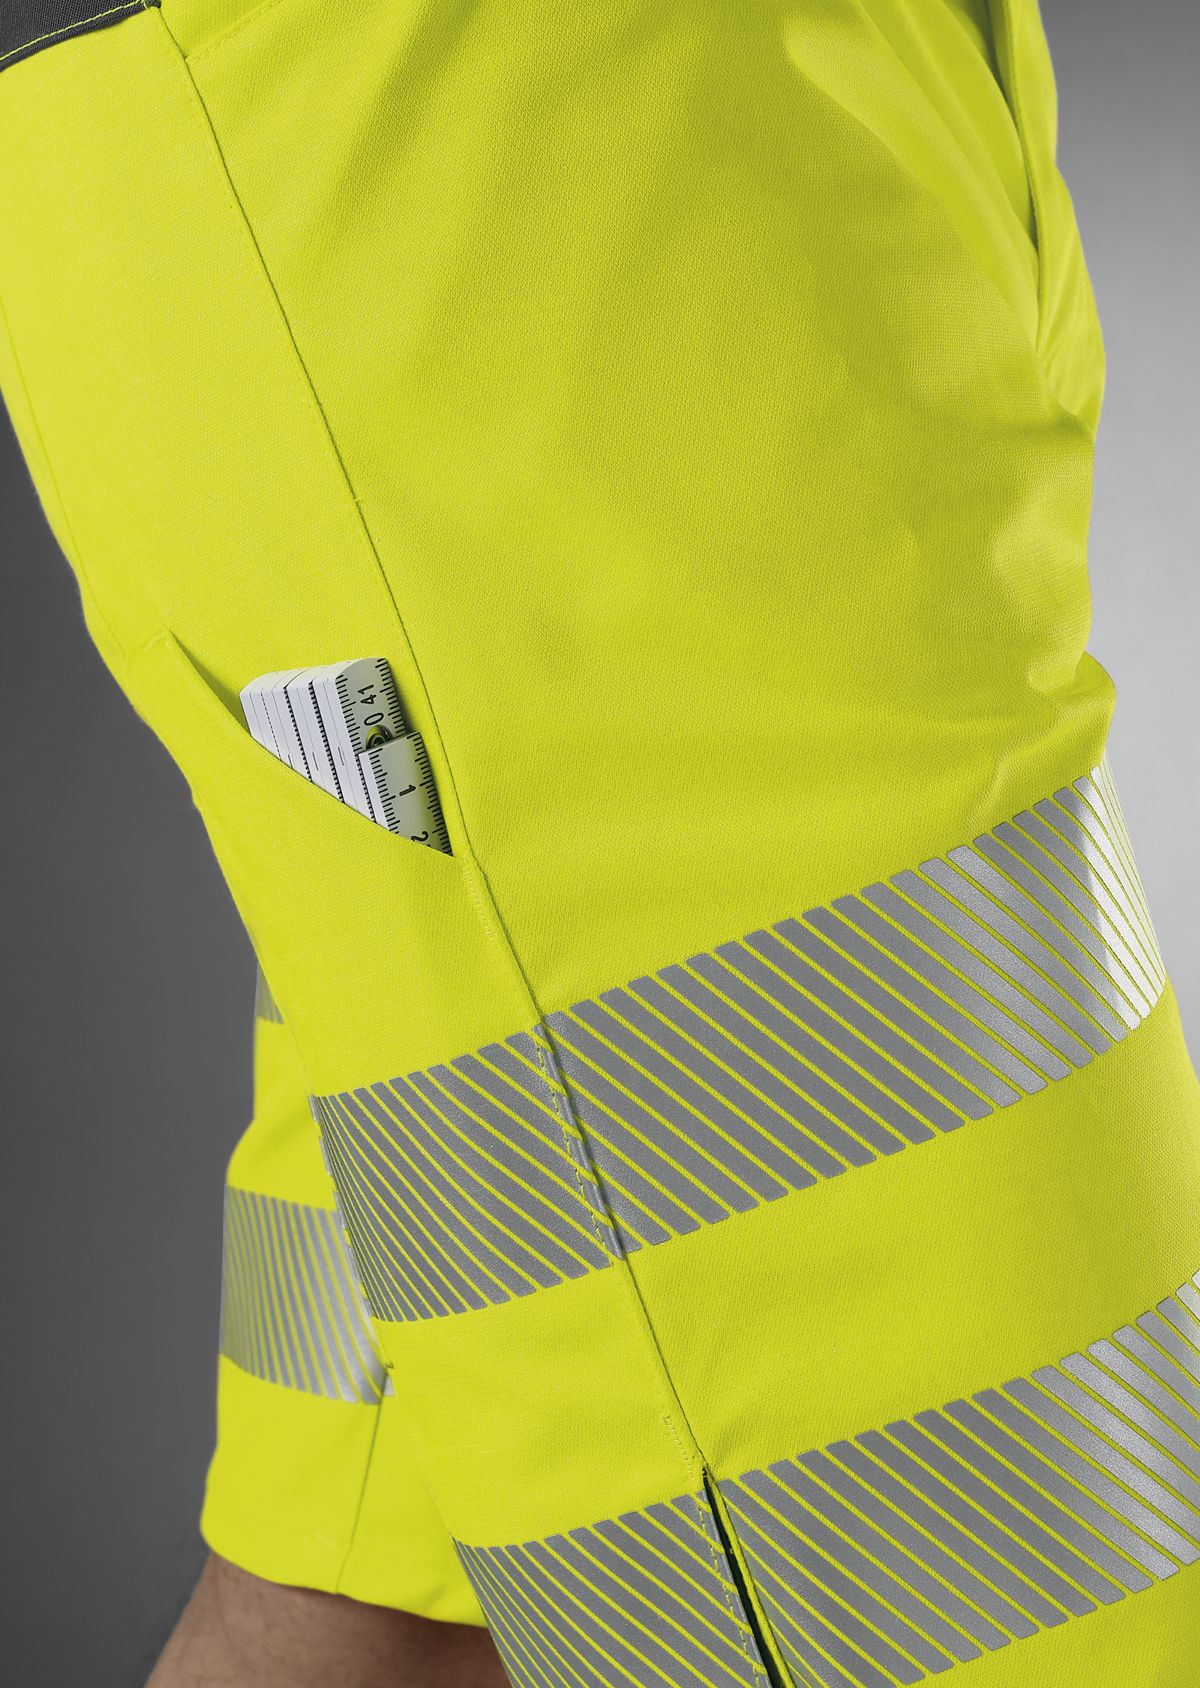 BP® Lichte stretch-shorts met hoge zichtbaarheid